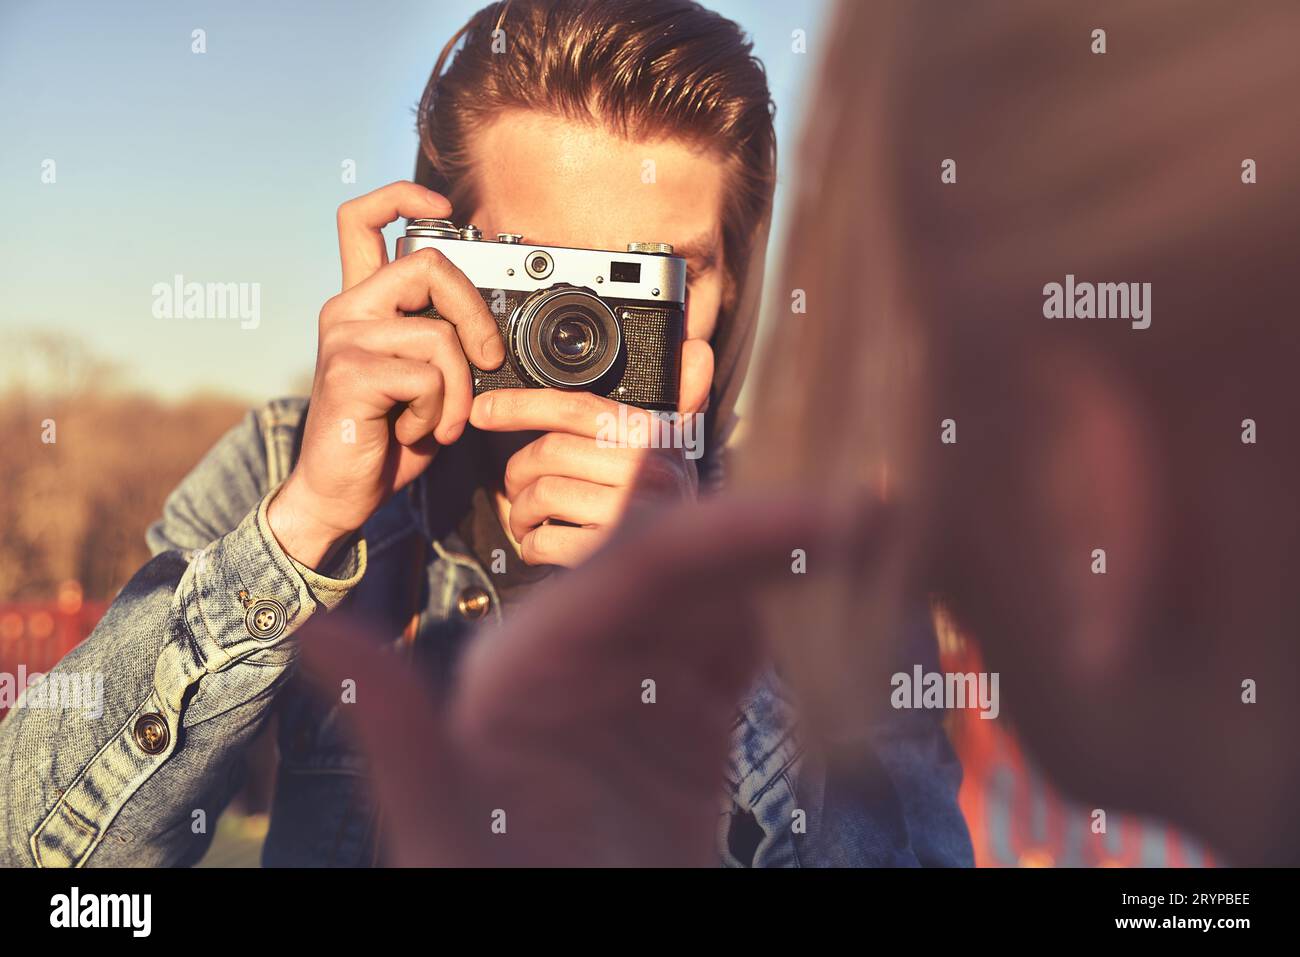 Jeune homme joyeux photographe prenant des photos avec l'appareil photo Banque D'Images